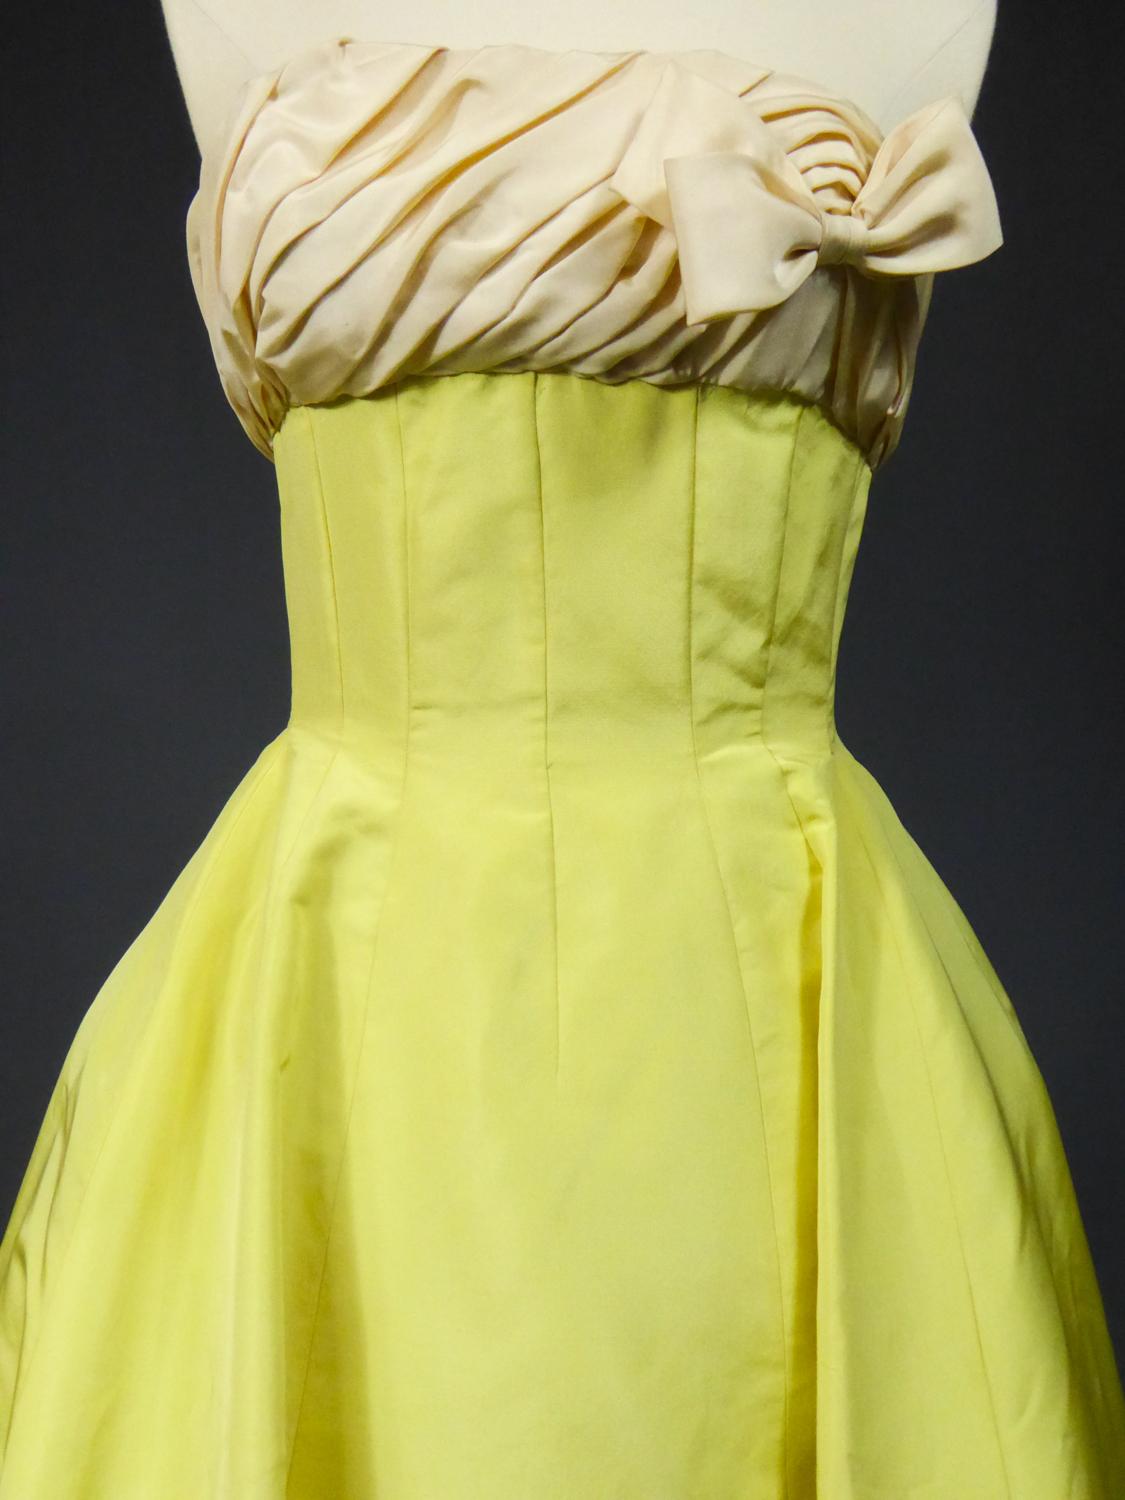 Circa 1958

France

Une longue robe de bal ou de cérémonie en faille de soie jaune pomme de banane ottomane. Robe à décolleté plongeant avec large décolleté plongeant et faille plissée oblique crème sur la poitrine ornée d'un nœud latéral. L'effet